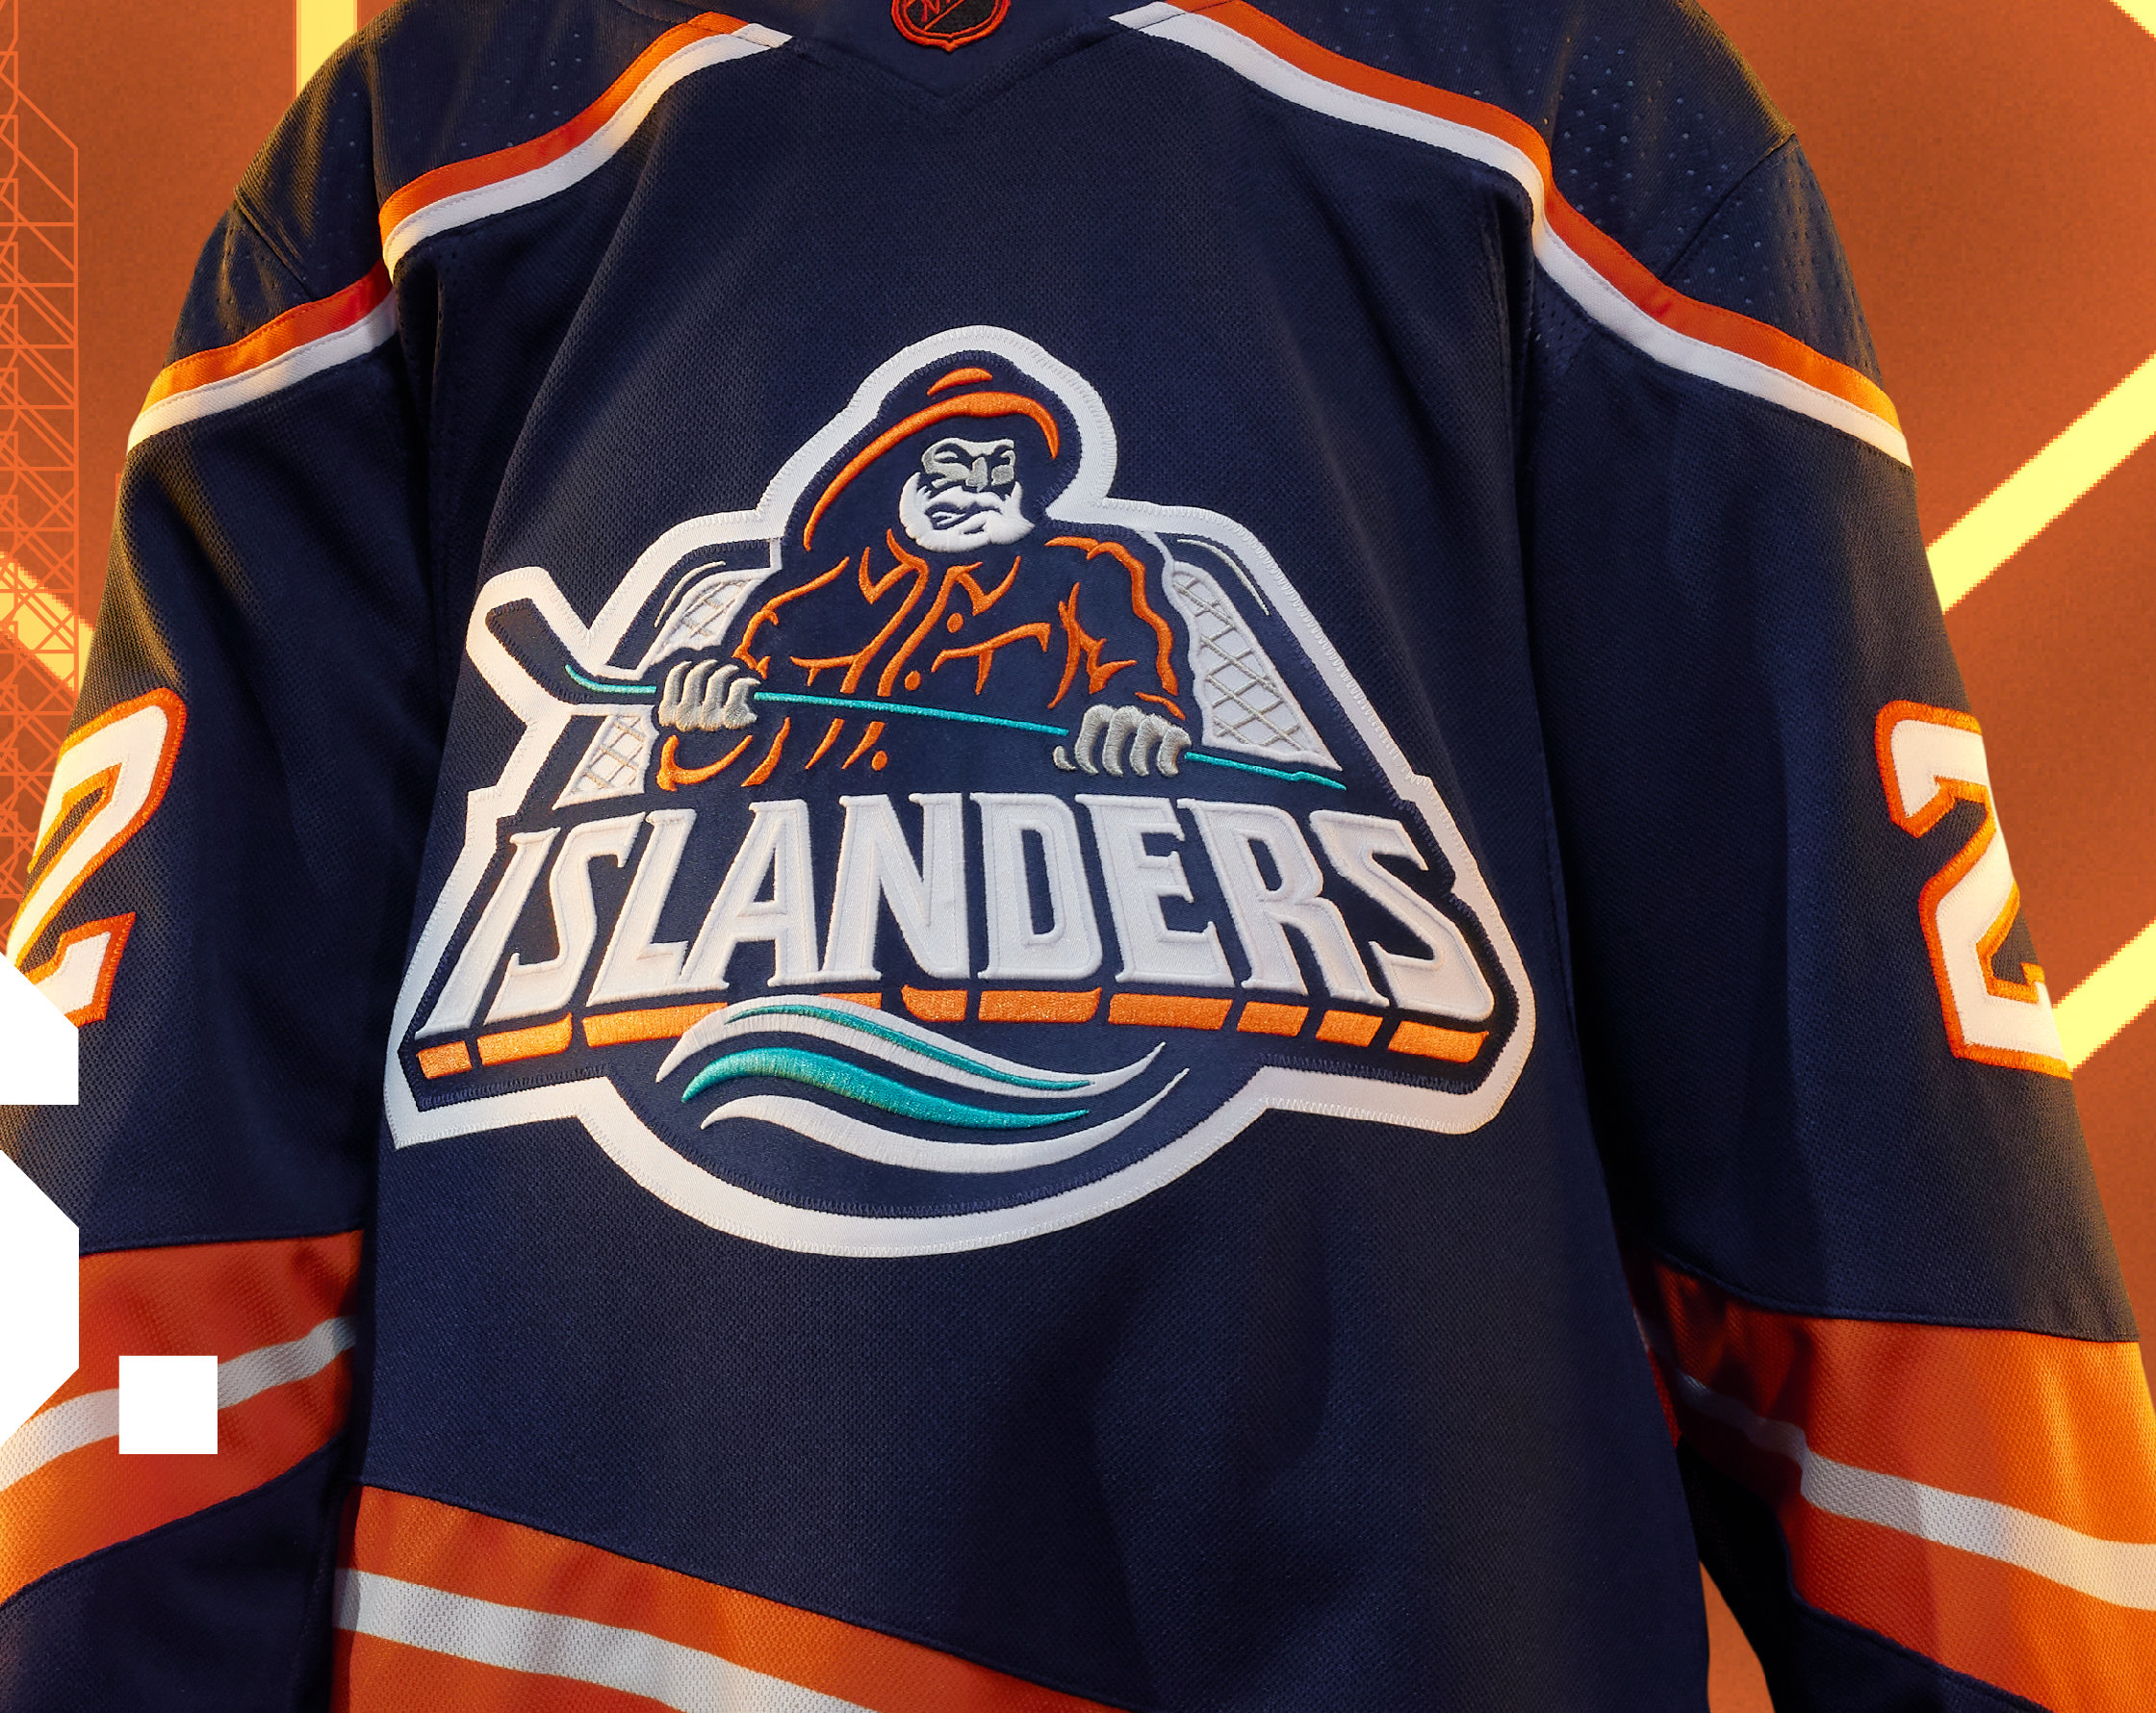 Islanders' fisherman gets modern reboot as fans welcome once